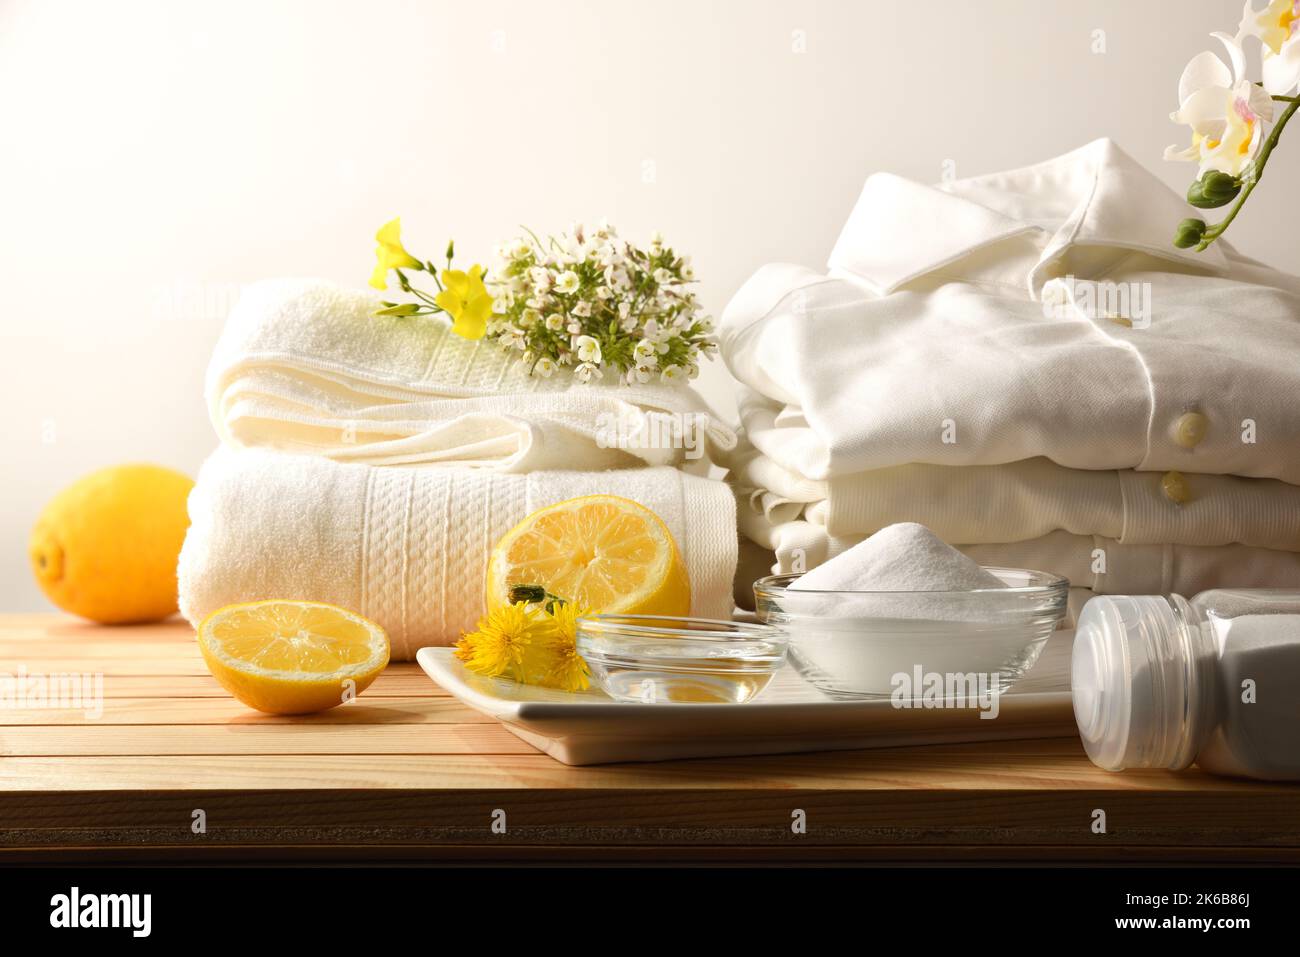 Remède à la maison pour laver les vêtements de manière durable et naturelle avec du citron, du bicarbonate et du vinaigre avec des vêtements sur une table en bois. Vue de dessus. Horizon Banque D'Images